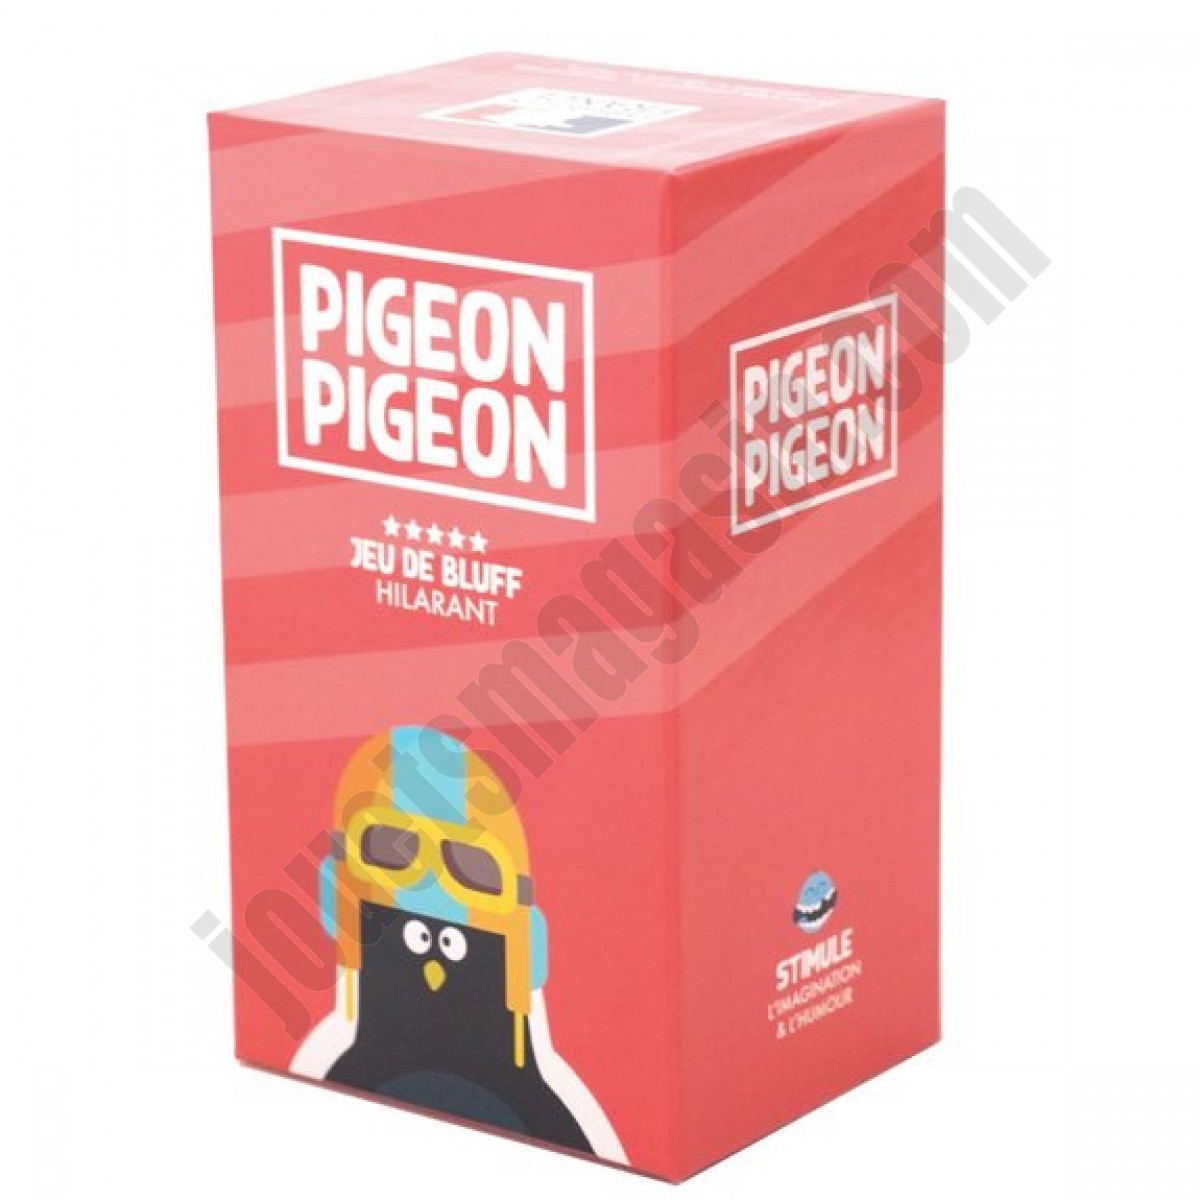 Pigeon Pigeon ◆◆◆ Nouveau - Pigeon Pigeon ◆◆◆ Nouveau